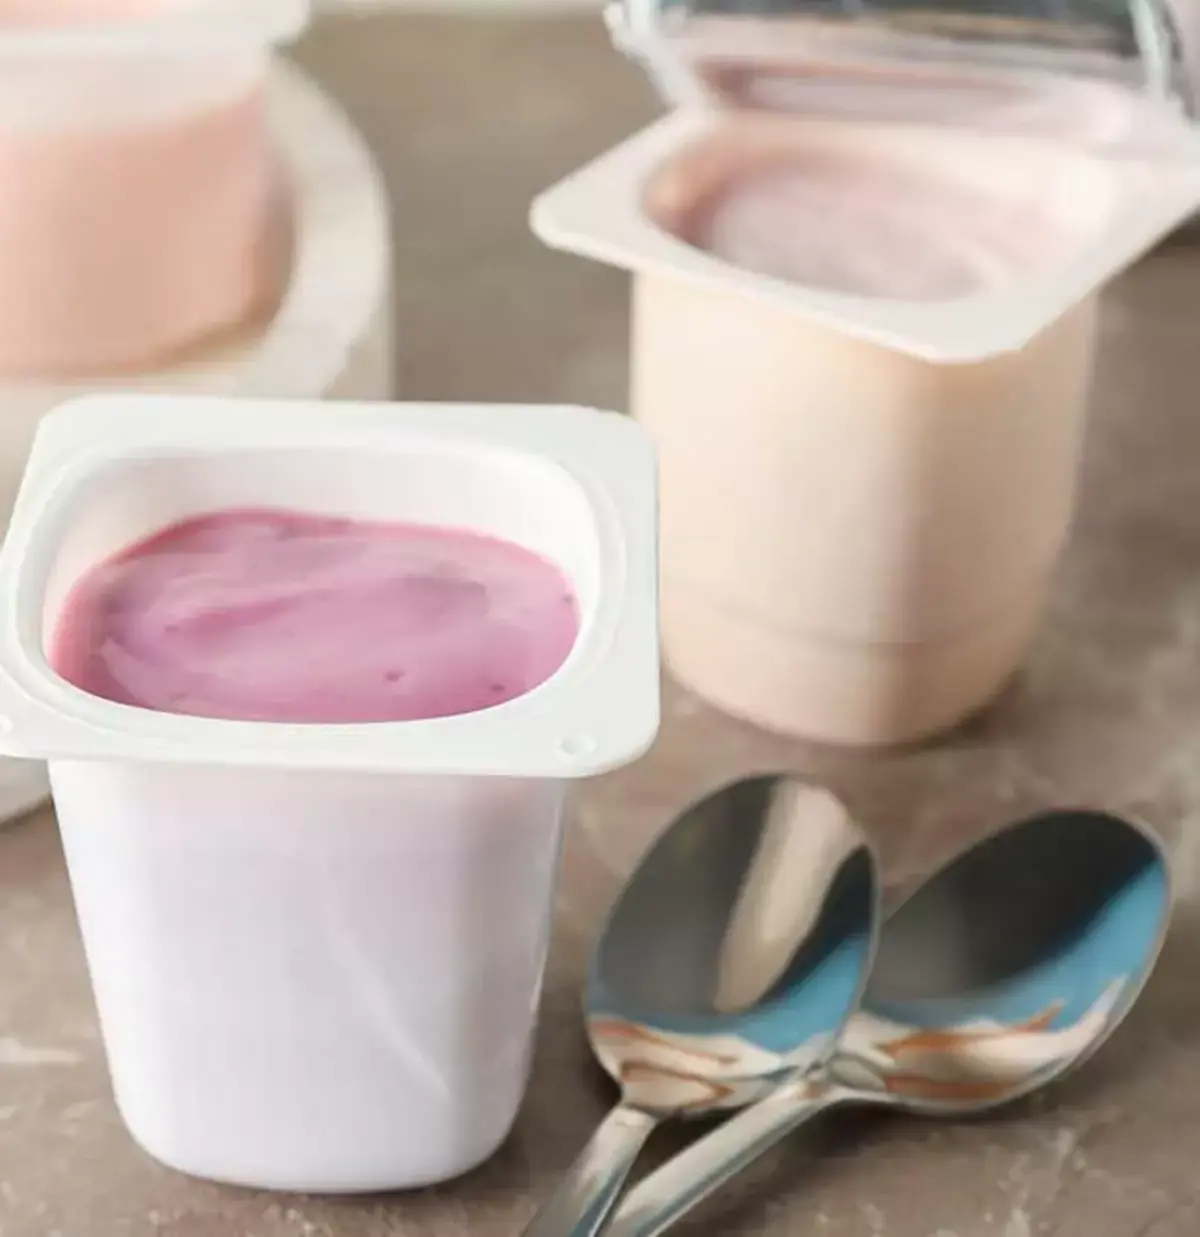 yaourts périmés ou les jeter doit on laver emballage plastique